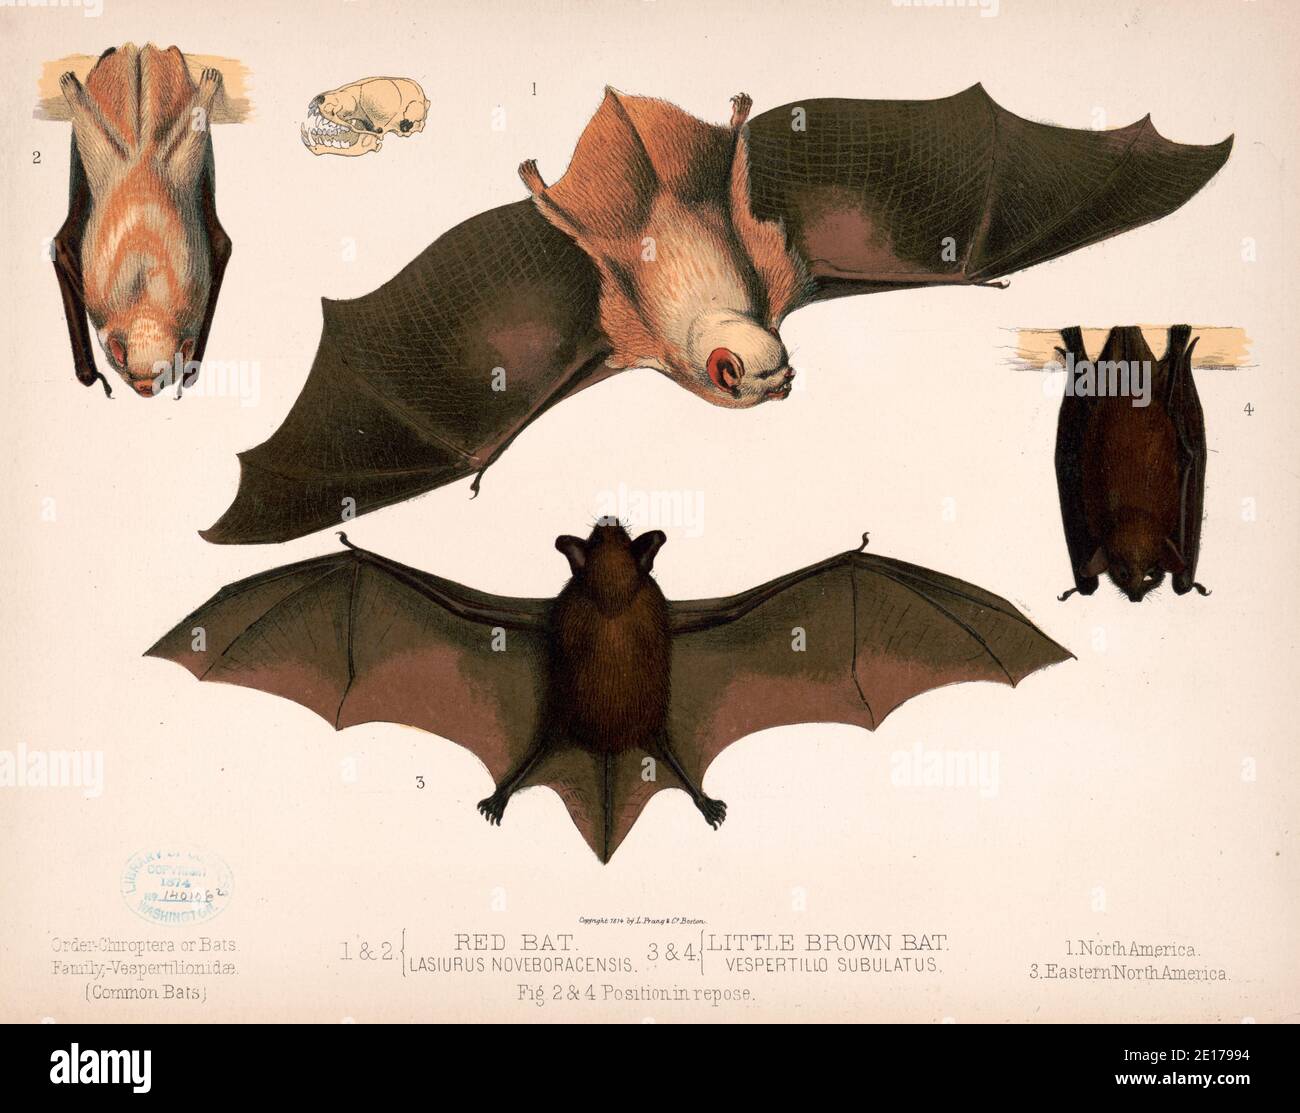 Ilustraciones de murciélagos - 1. Y 2. Murciélago rojo. Lasiurus noveboracensis 3. Y 4. Un murciélago marrón. Vespertillo suplatus. Figs. 2. Y 4. Posición en reposo - alrededor de 1874 Foto de stock